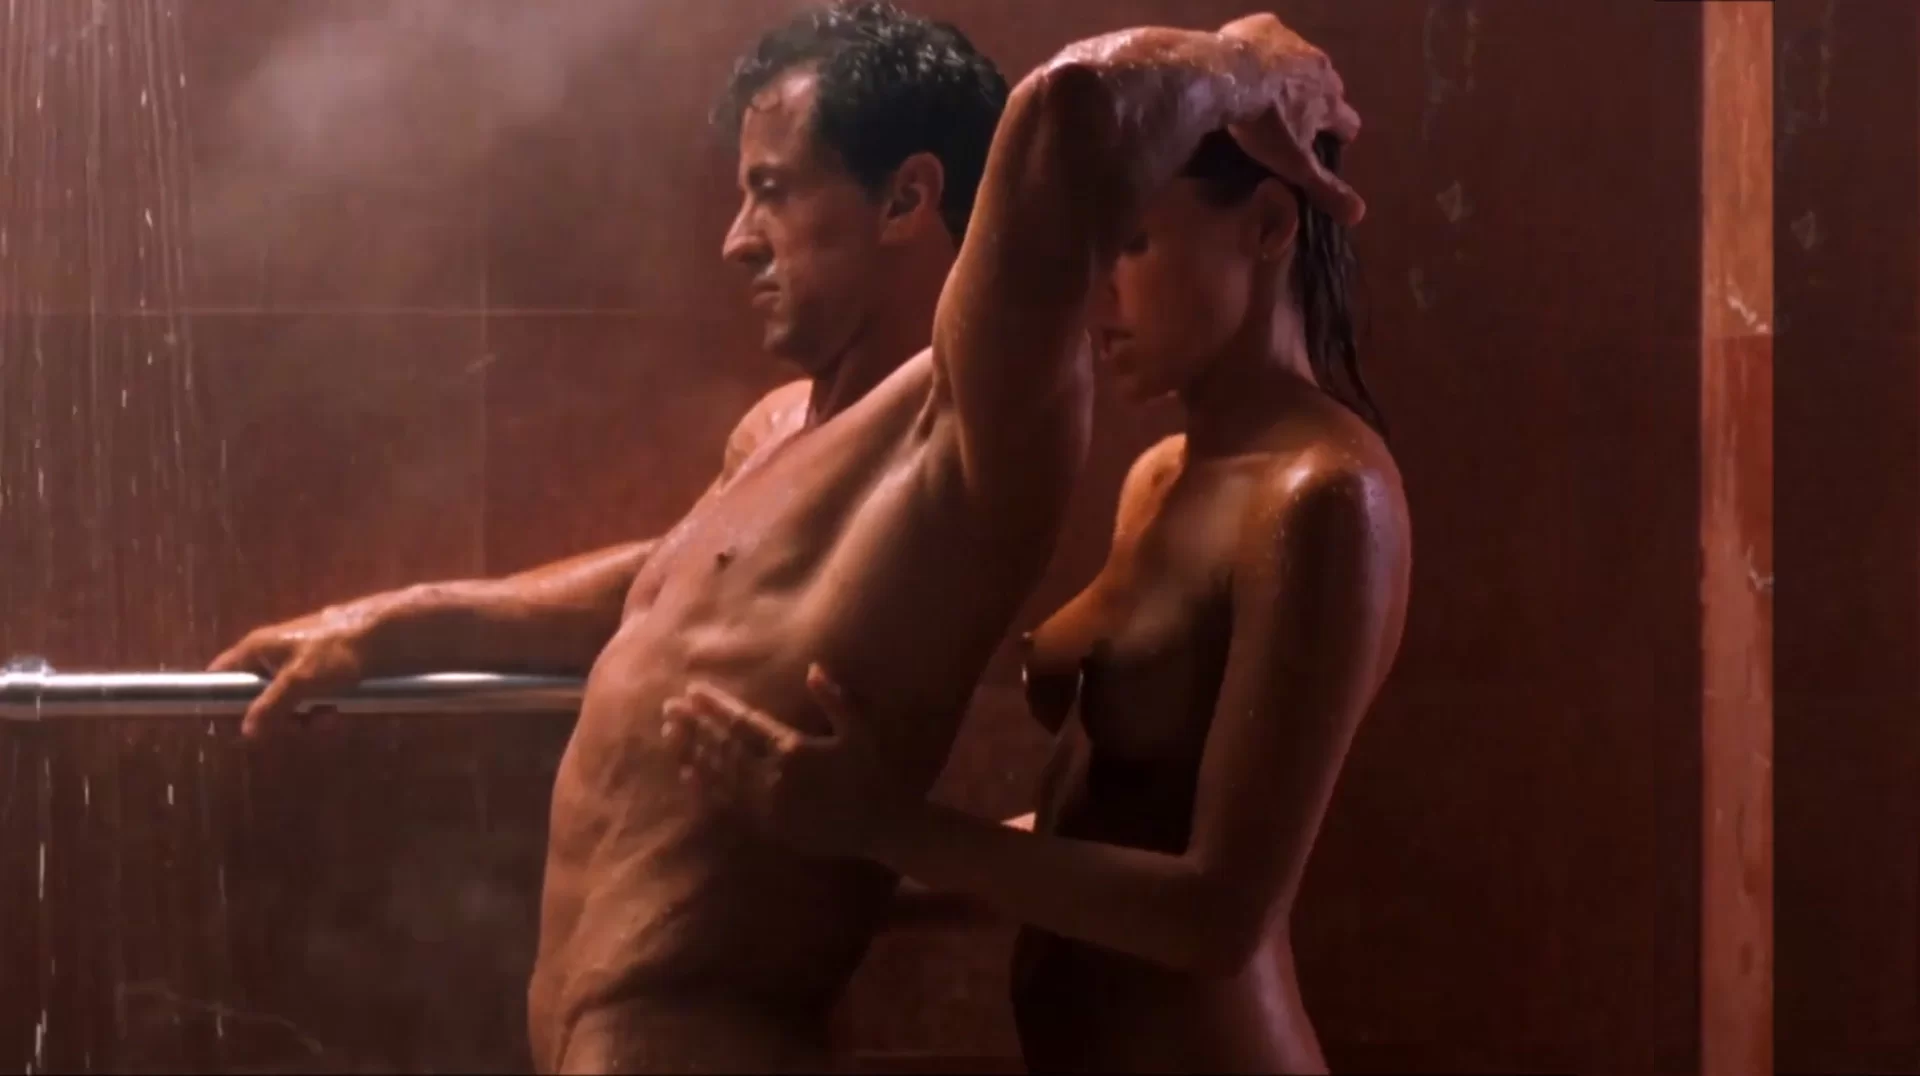 Hot shower sex scene sylvester